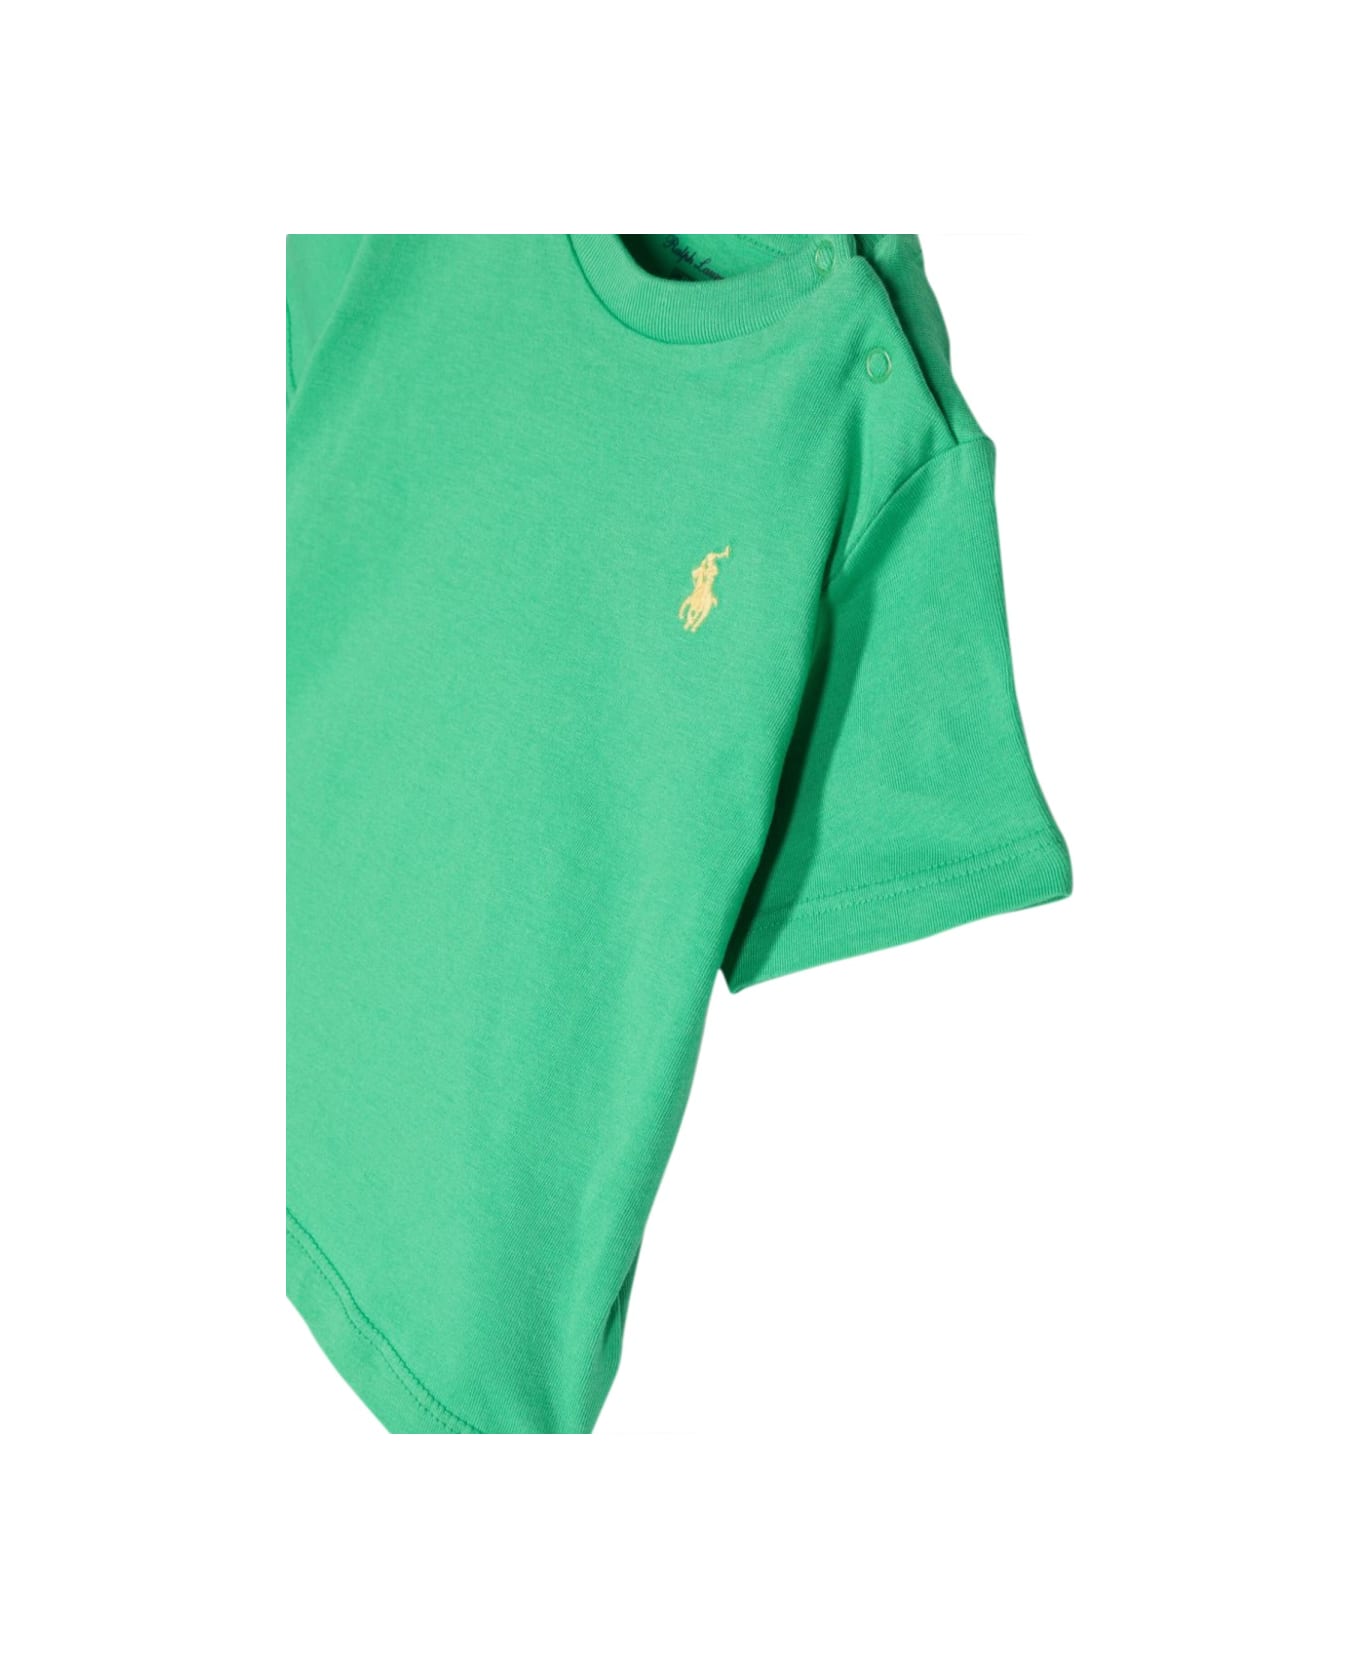 Polo Ralph Lauren Ss Cn-tops-t-shirt - MULTICOLOUR